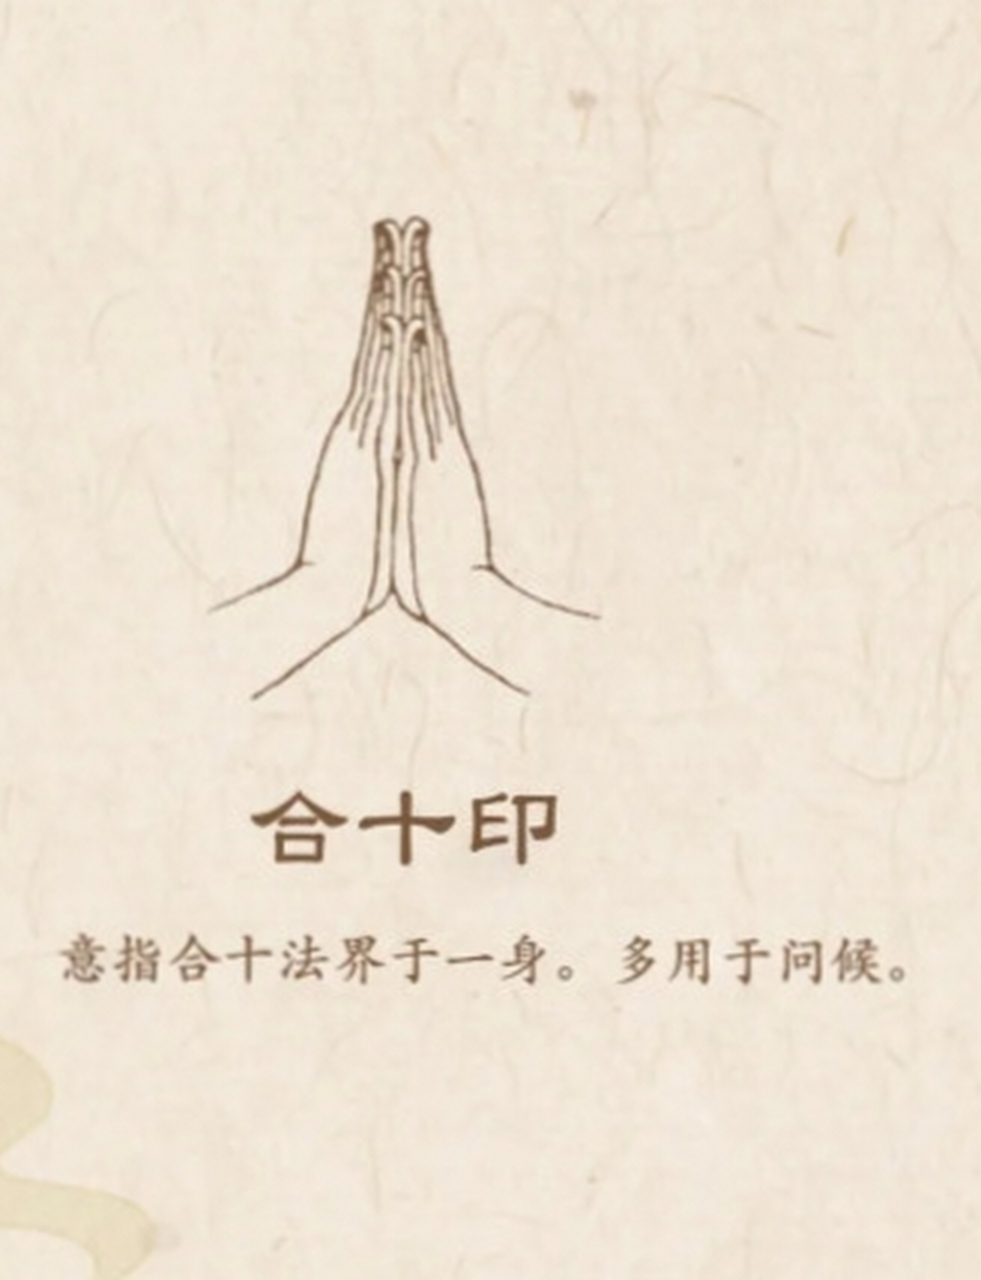 佛教常见手印及其寓意